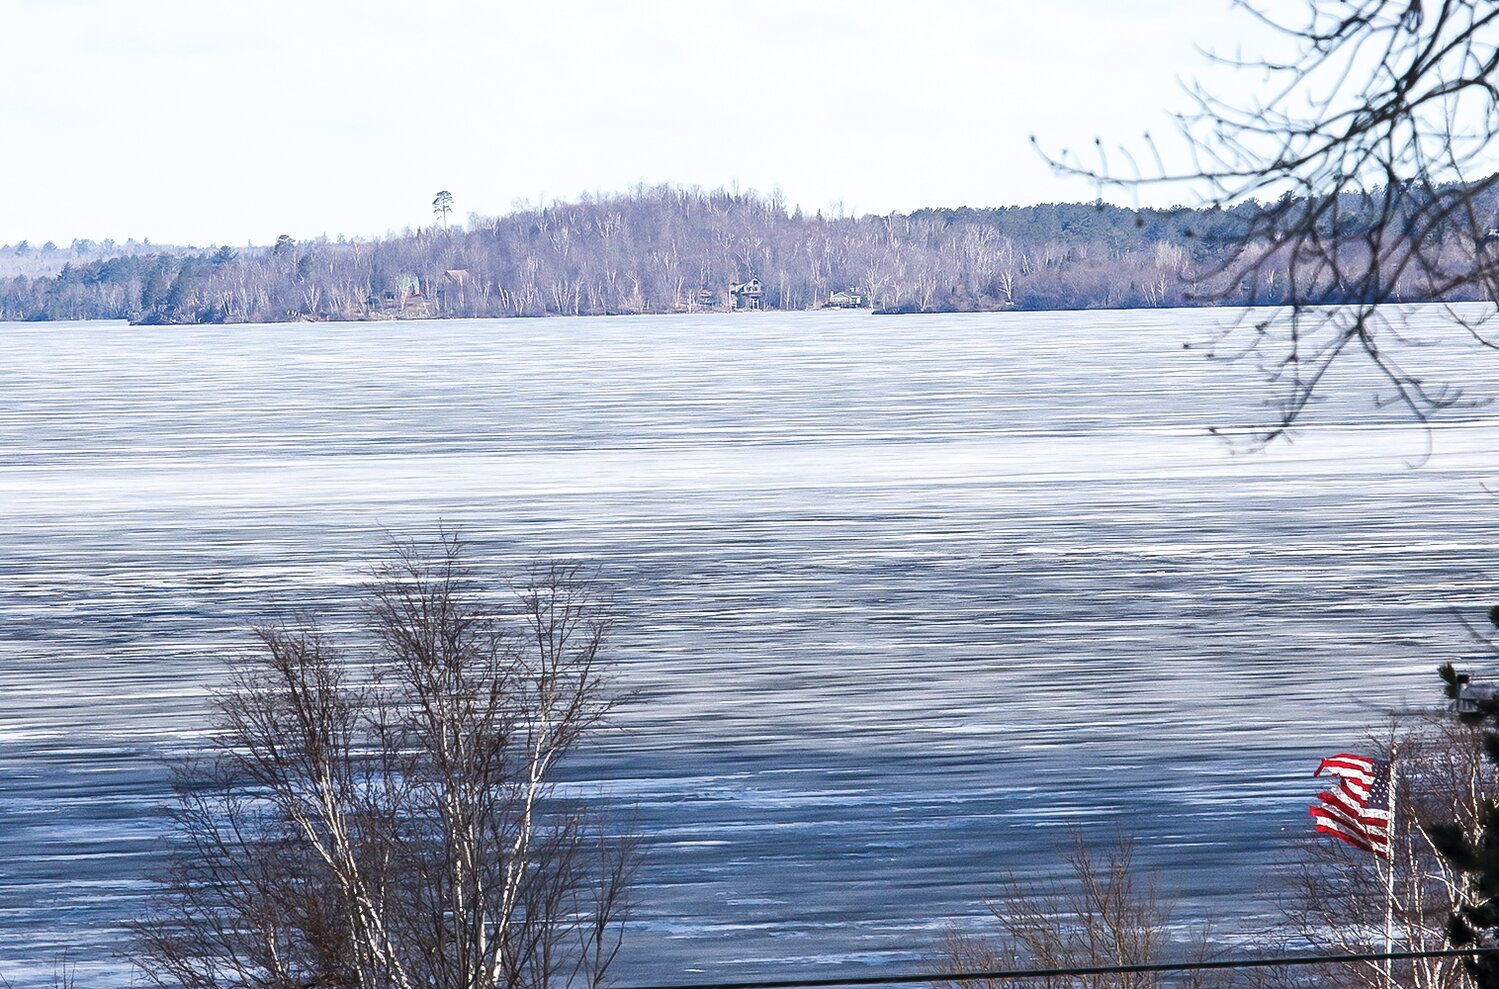 Ice was still mostly white but beginning to darken on Lake Vermilion near McKinley Park on Monday, May 1.